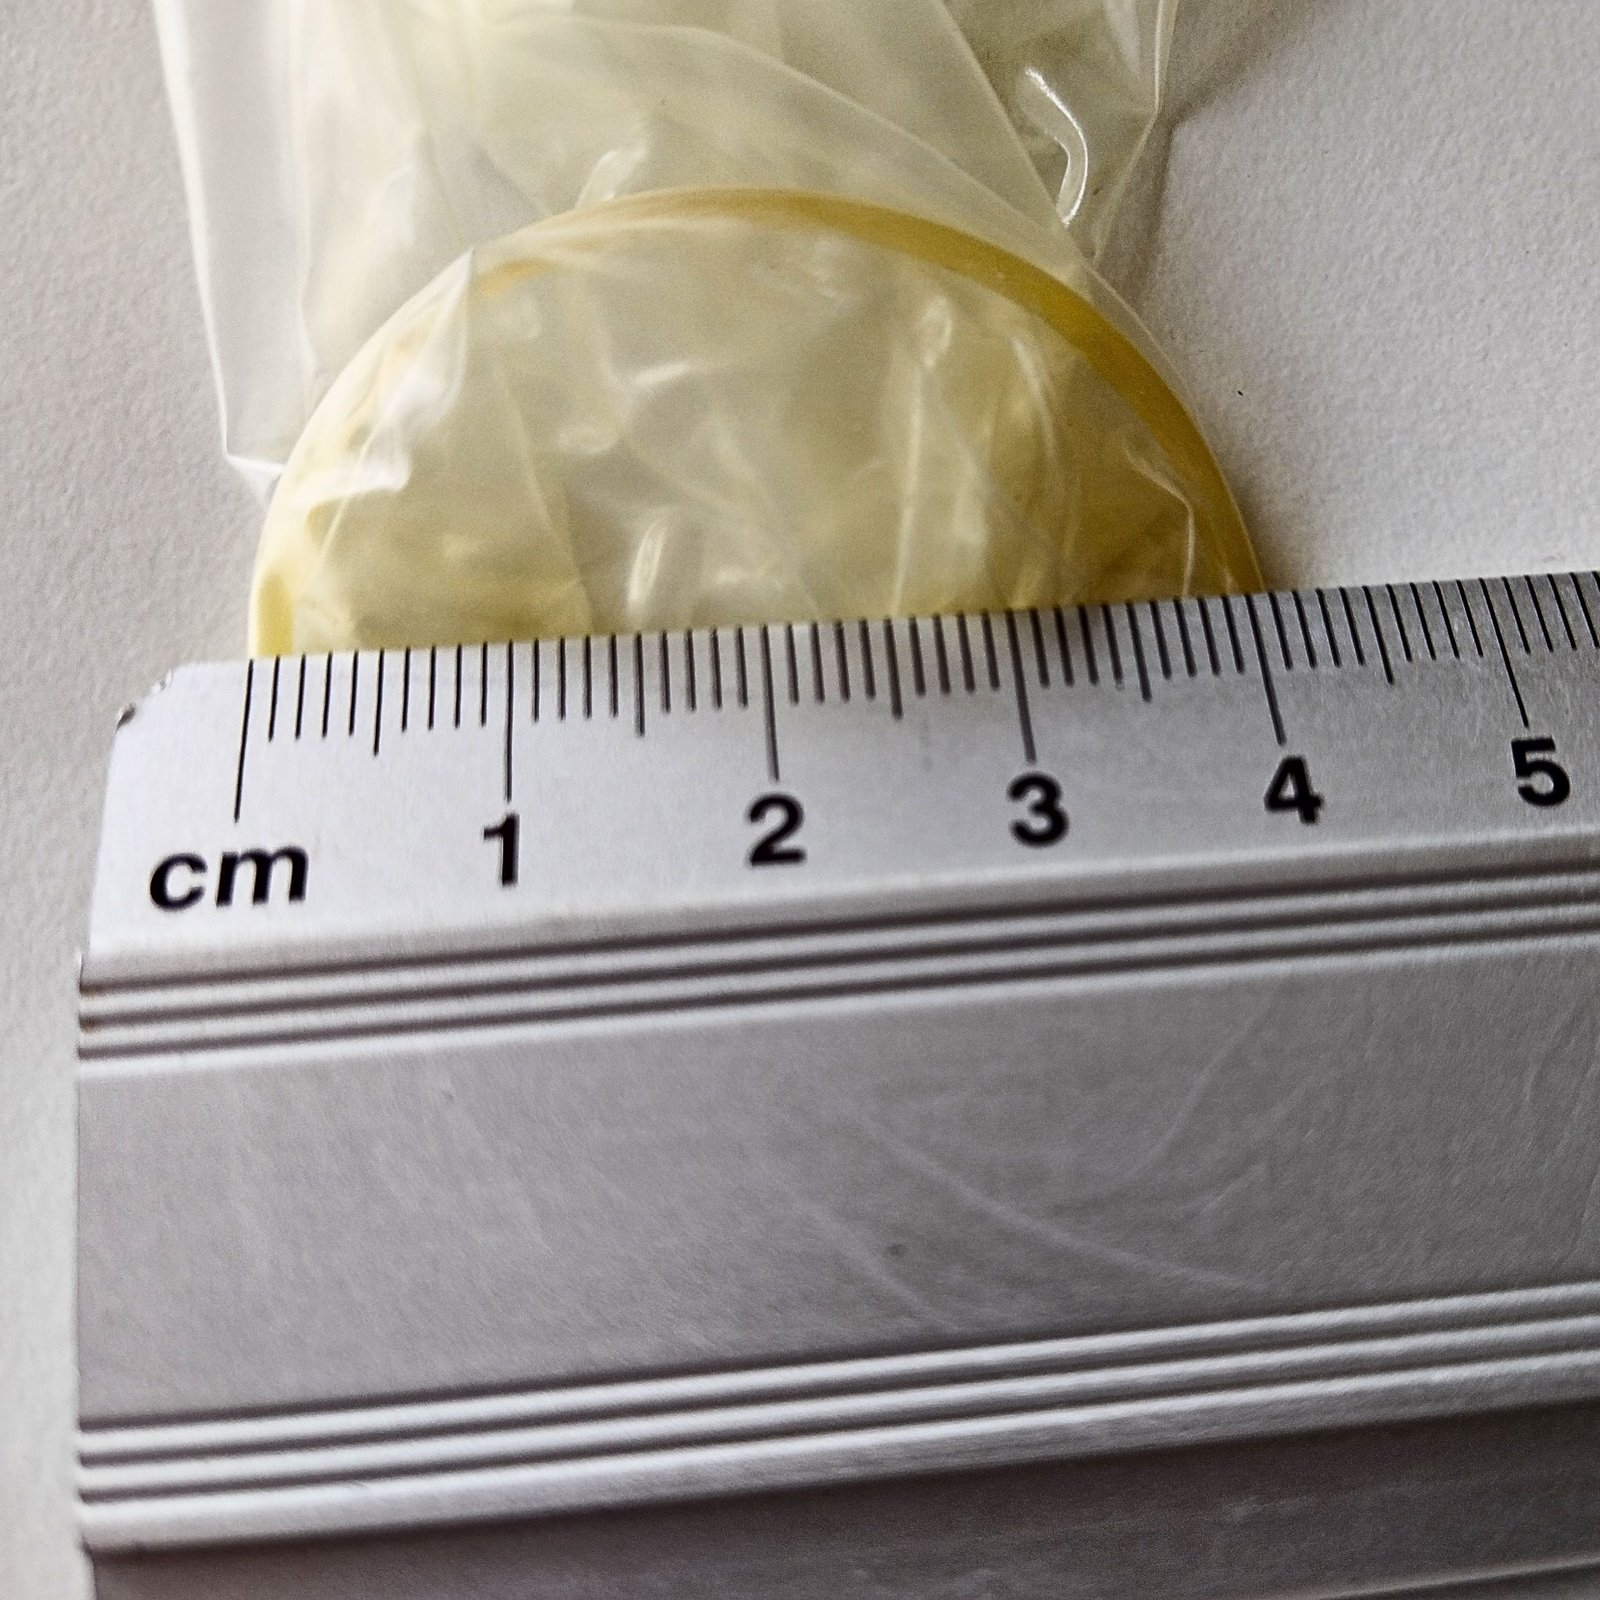 Mjerenje promjera kondoma